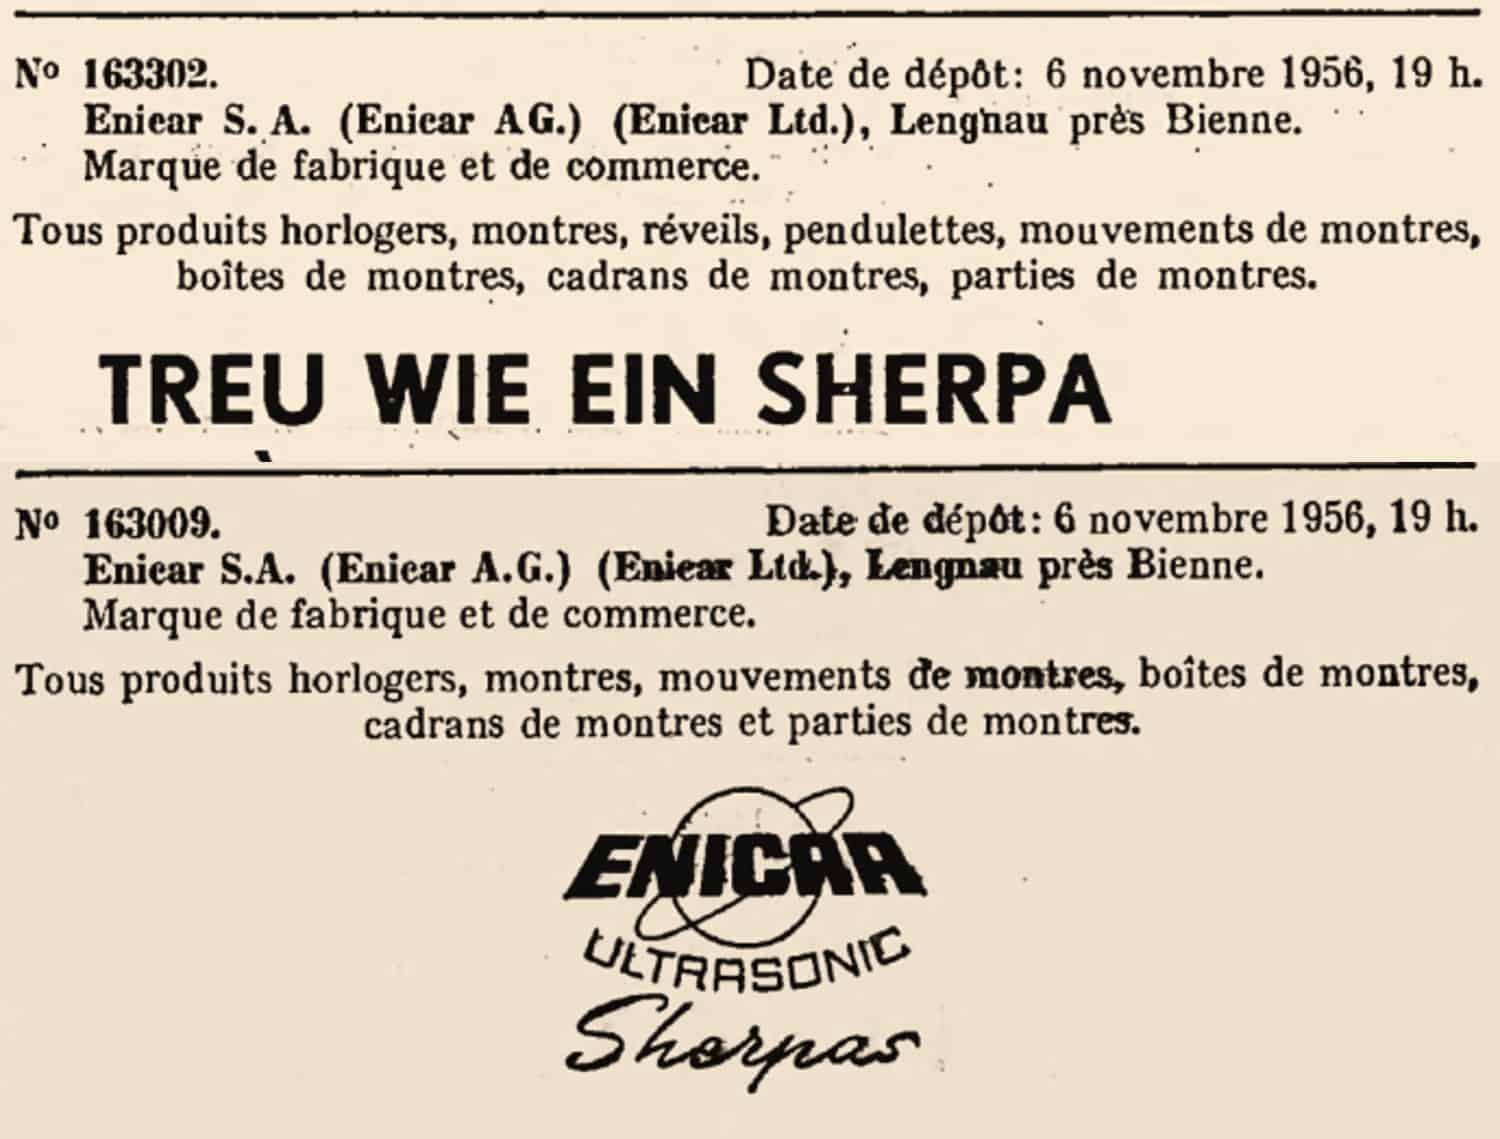 Zuverlässige Sportuhren - die Enicar Sherpa Modelle